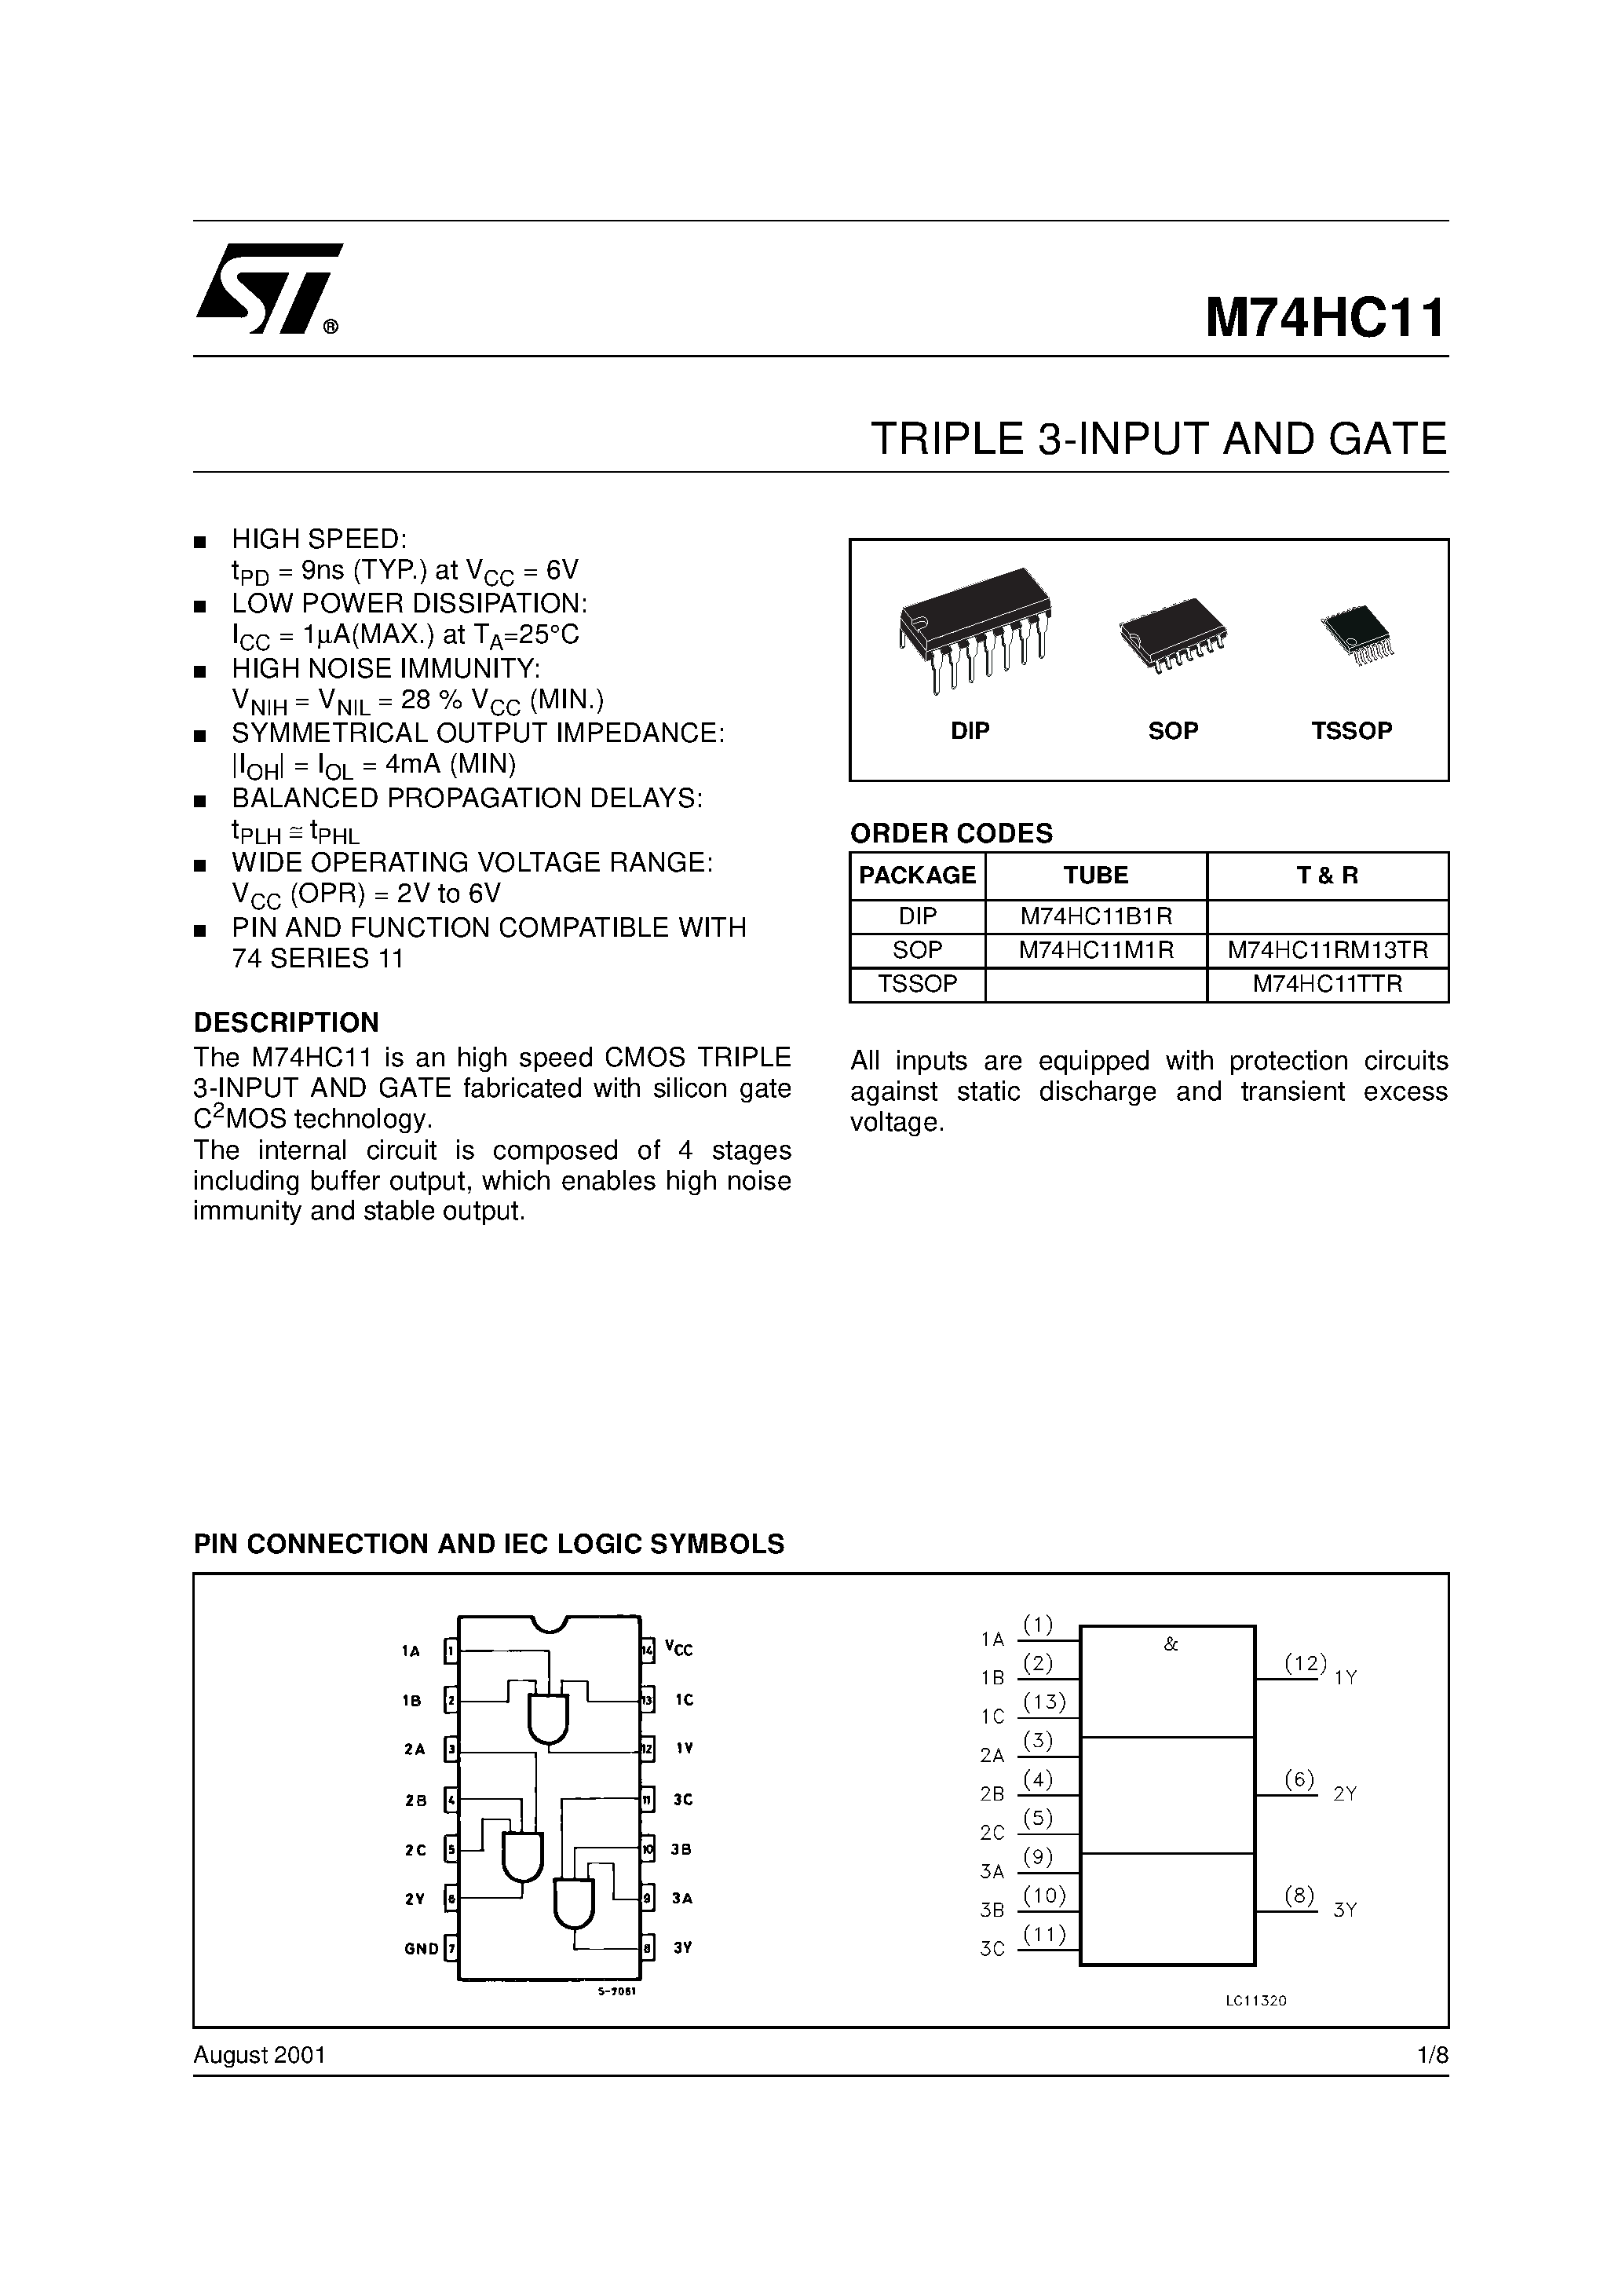 Datasheet M74HC11 - TRIPLE 3-INPUT AND GATE page 1